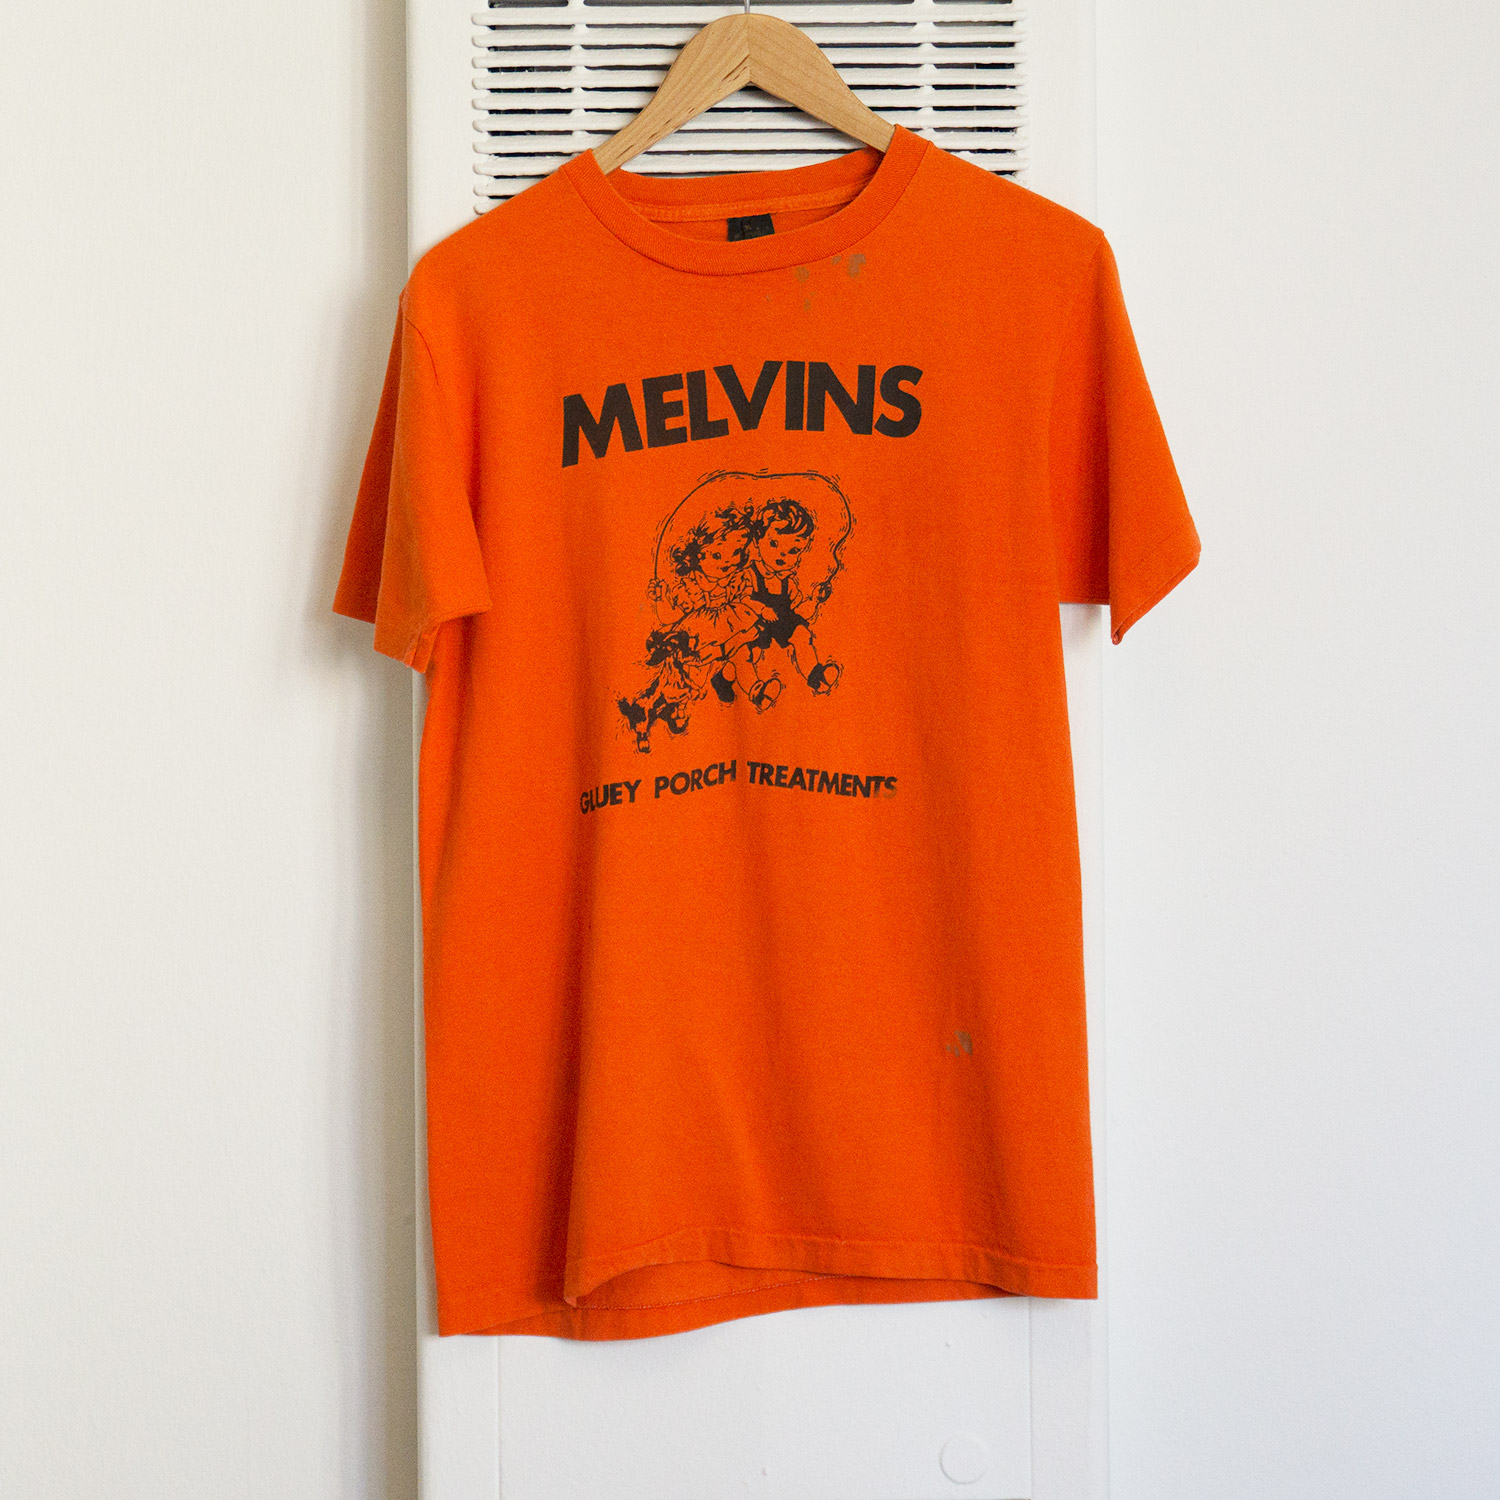 Vintage Melvins Gluey Porch Treatment T-shirt, Front